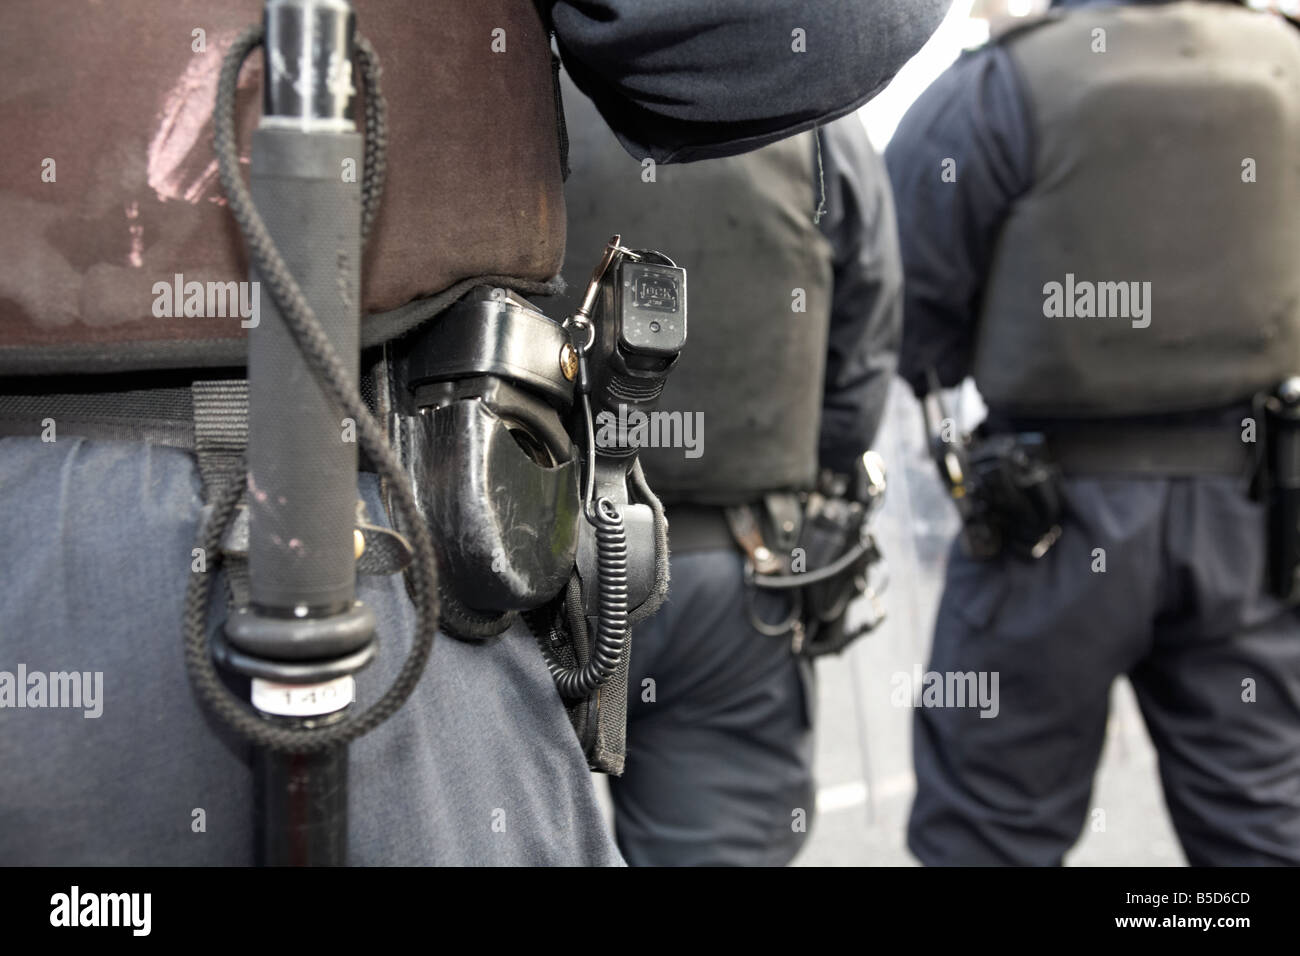 Service de police PSNI de l'Irlande du Nord, agent de contrôle de l'émeute de porter des menottes et baton pistolet Glock perturbation pendant Banque D'Images